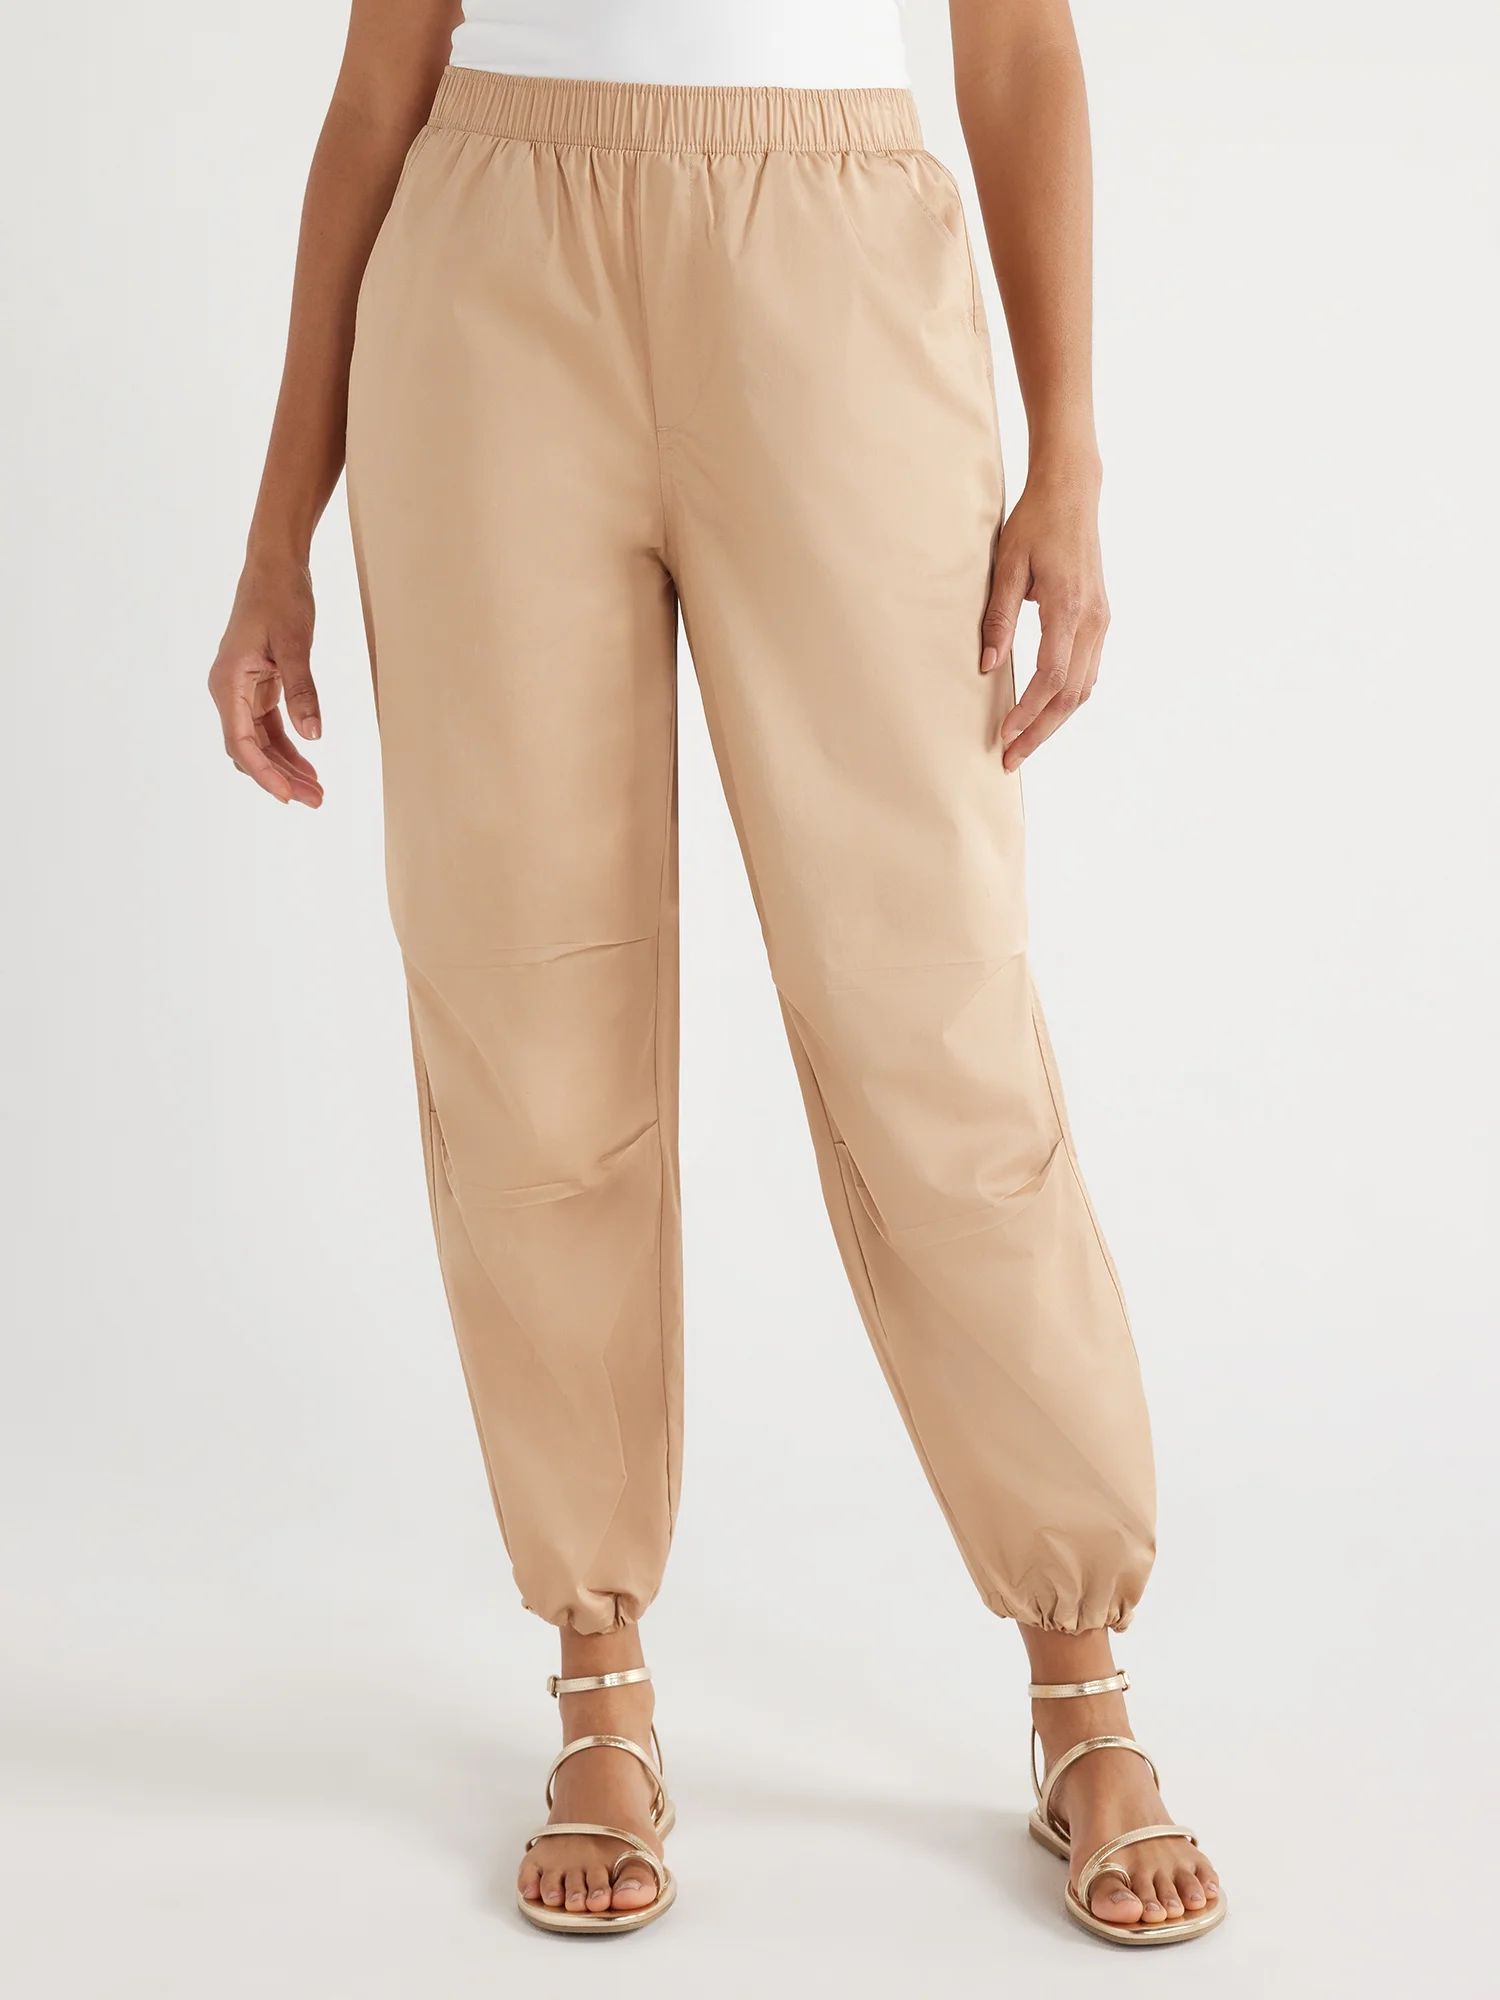 Scoop Women’s Cotton Parachute Jogger Pants, Sizes XS-XXL | Walmart (US)